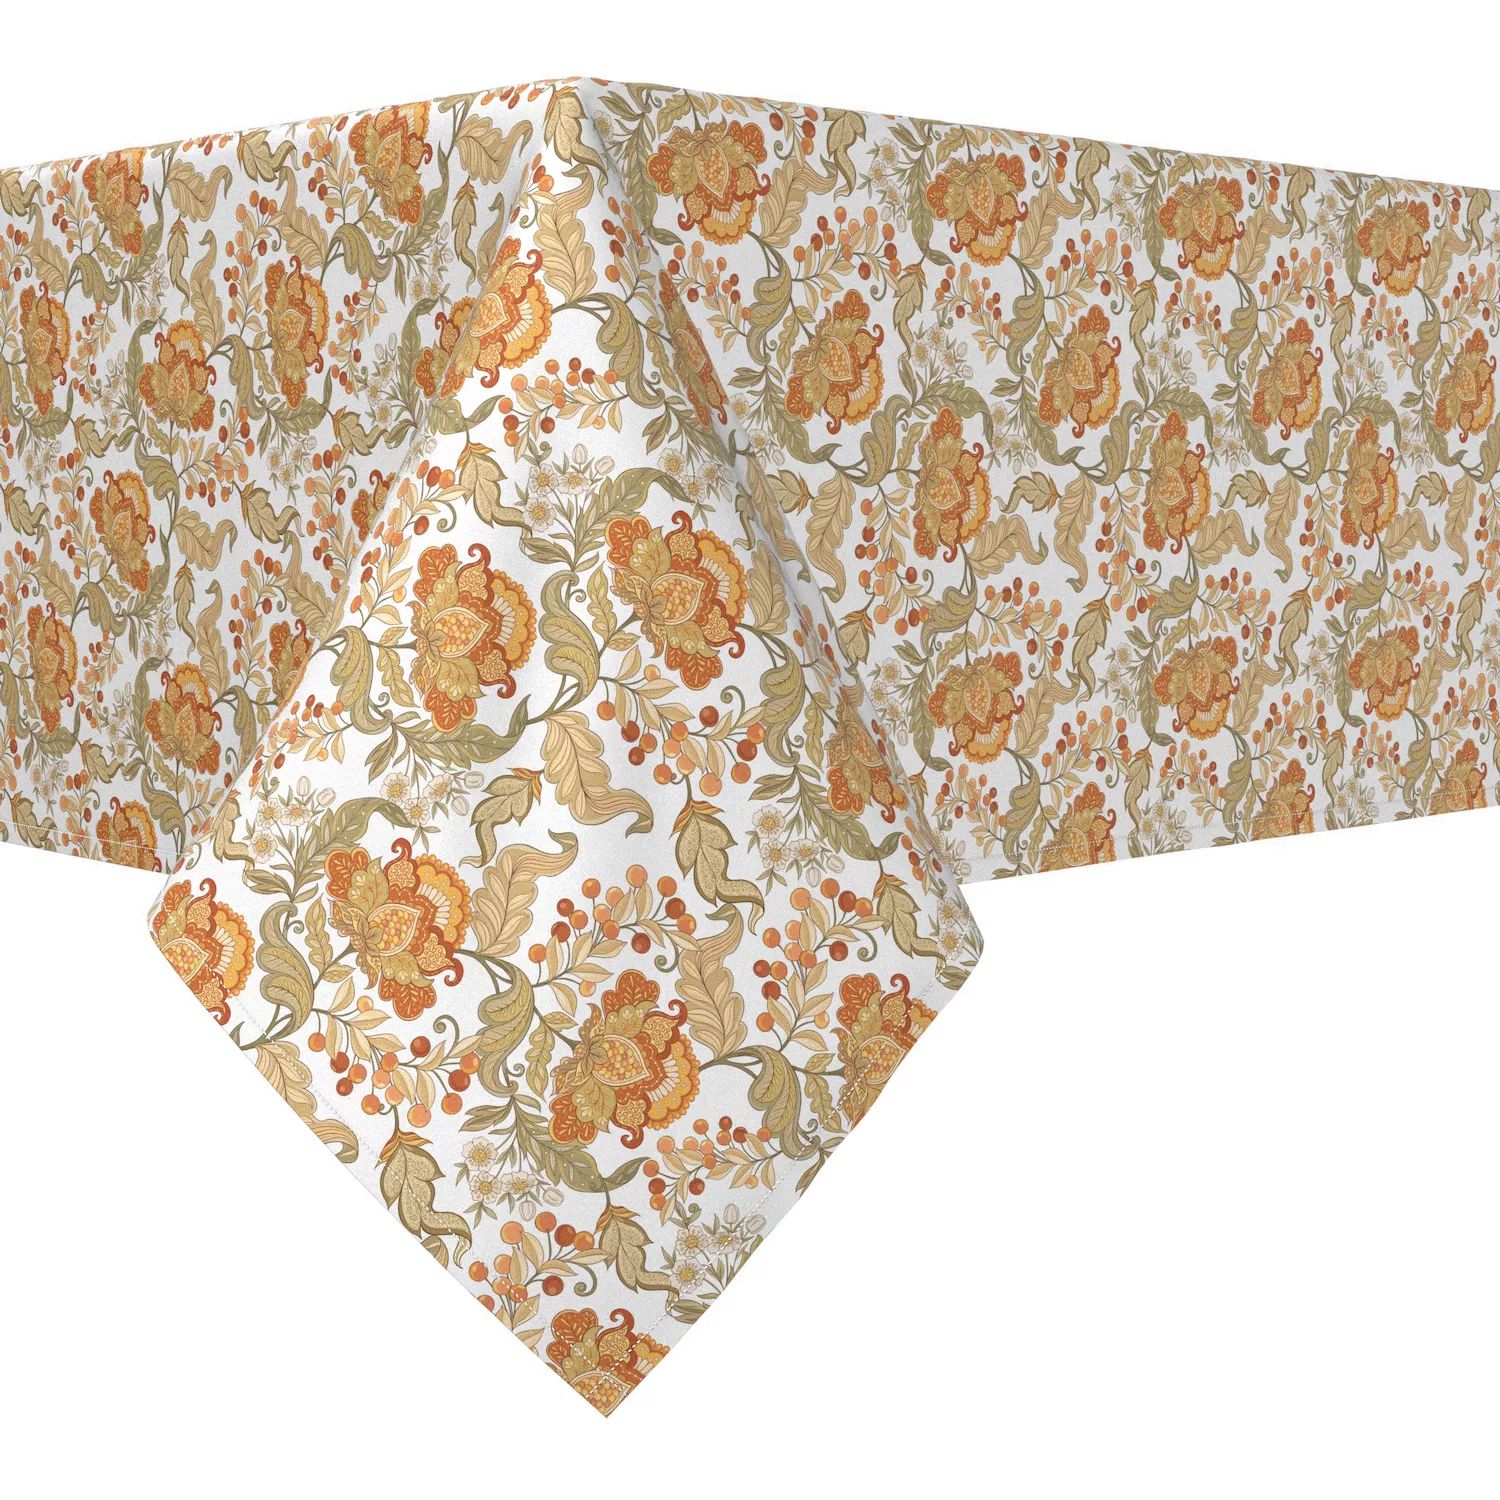 Прямоугольная скатерть, 100 % хлопок, 60х84 дюйма, с цветочным принтом в винтажном стиле. прямоугольная скатерть 100 % полиэстер 60x84 дюйма с цветочным принтом в винтажном стиле